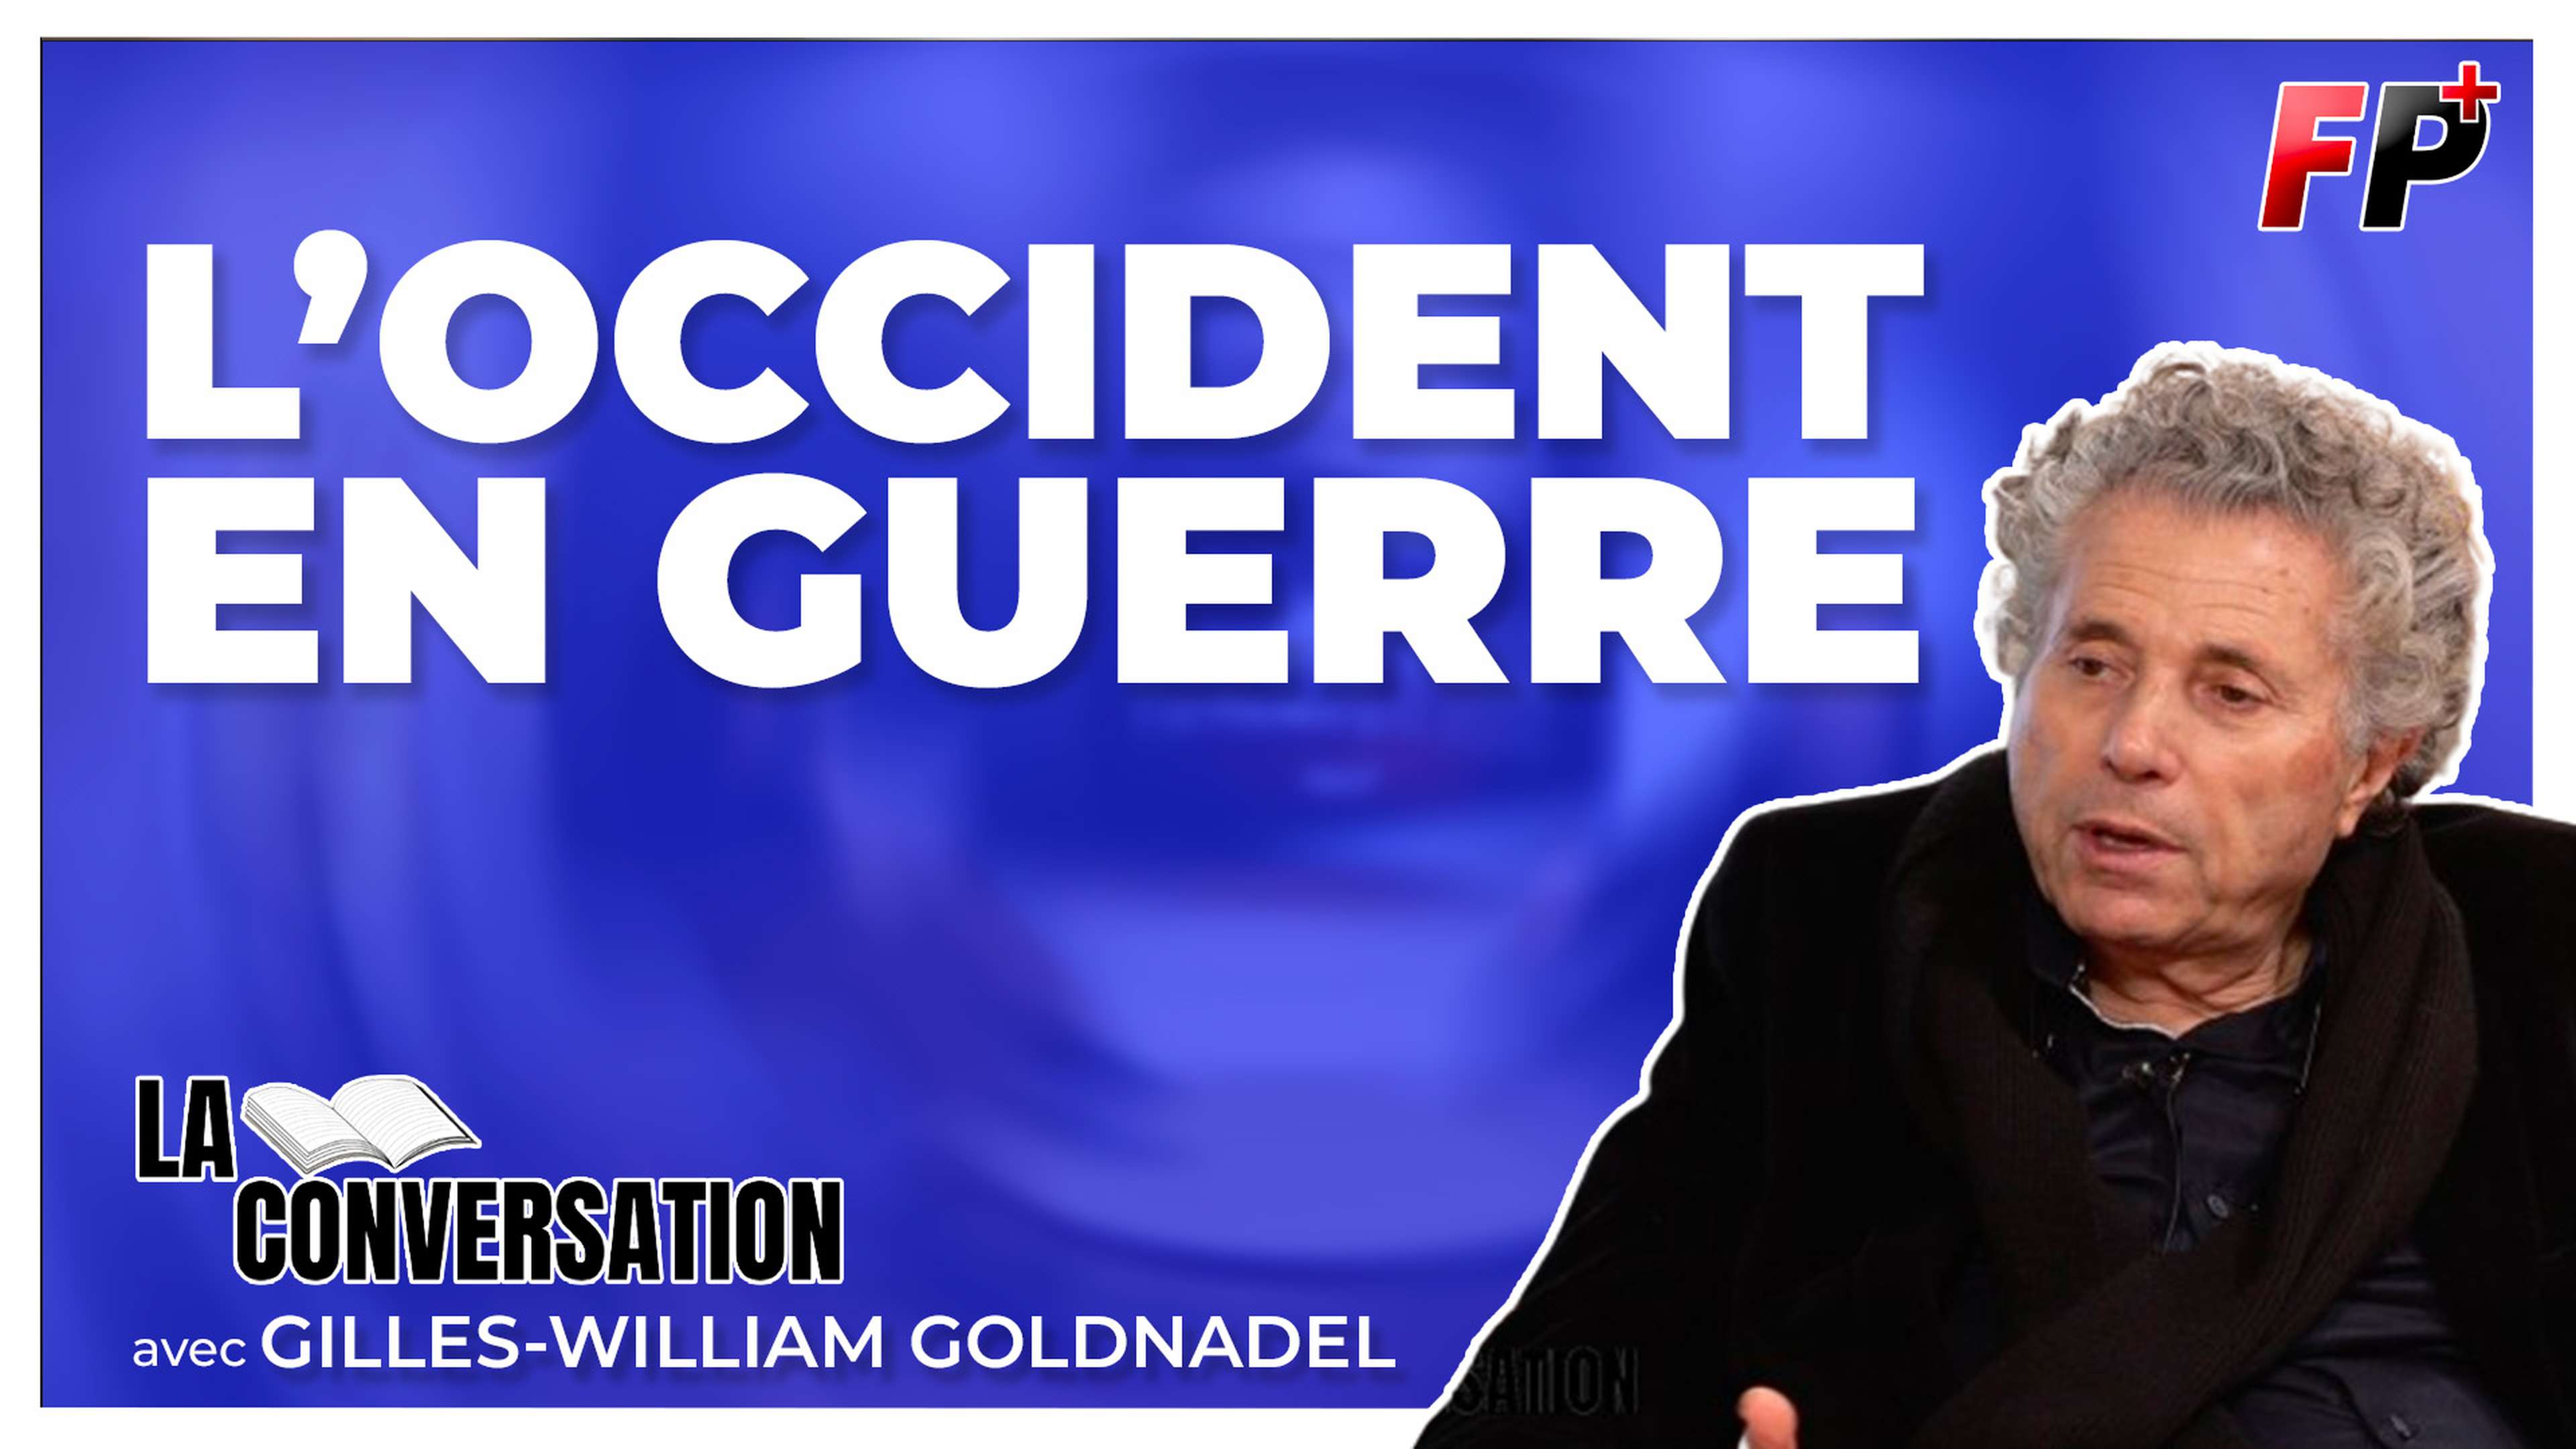 gilles-william-goldnadel-conversation-occident-israel